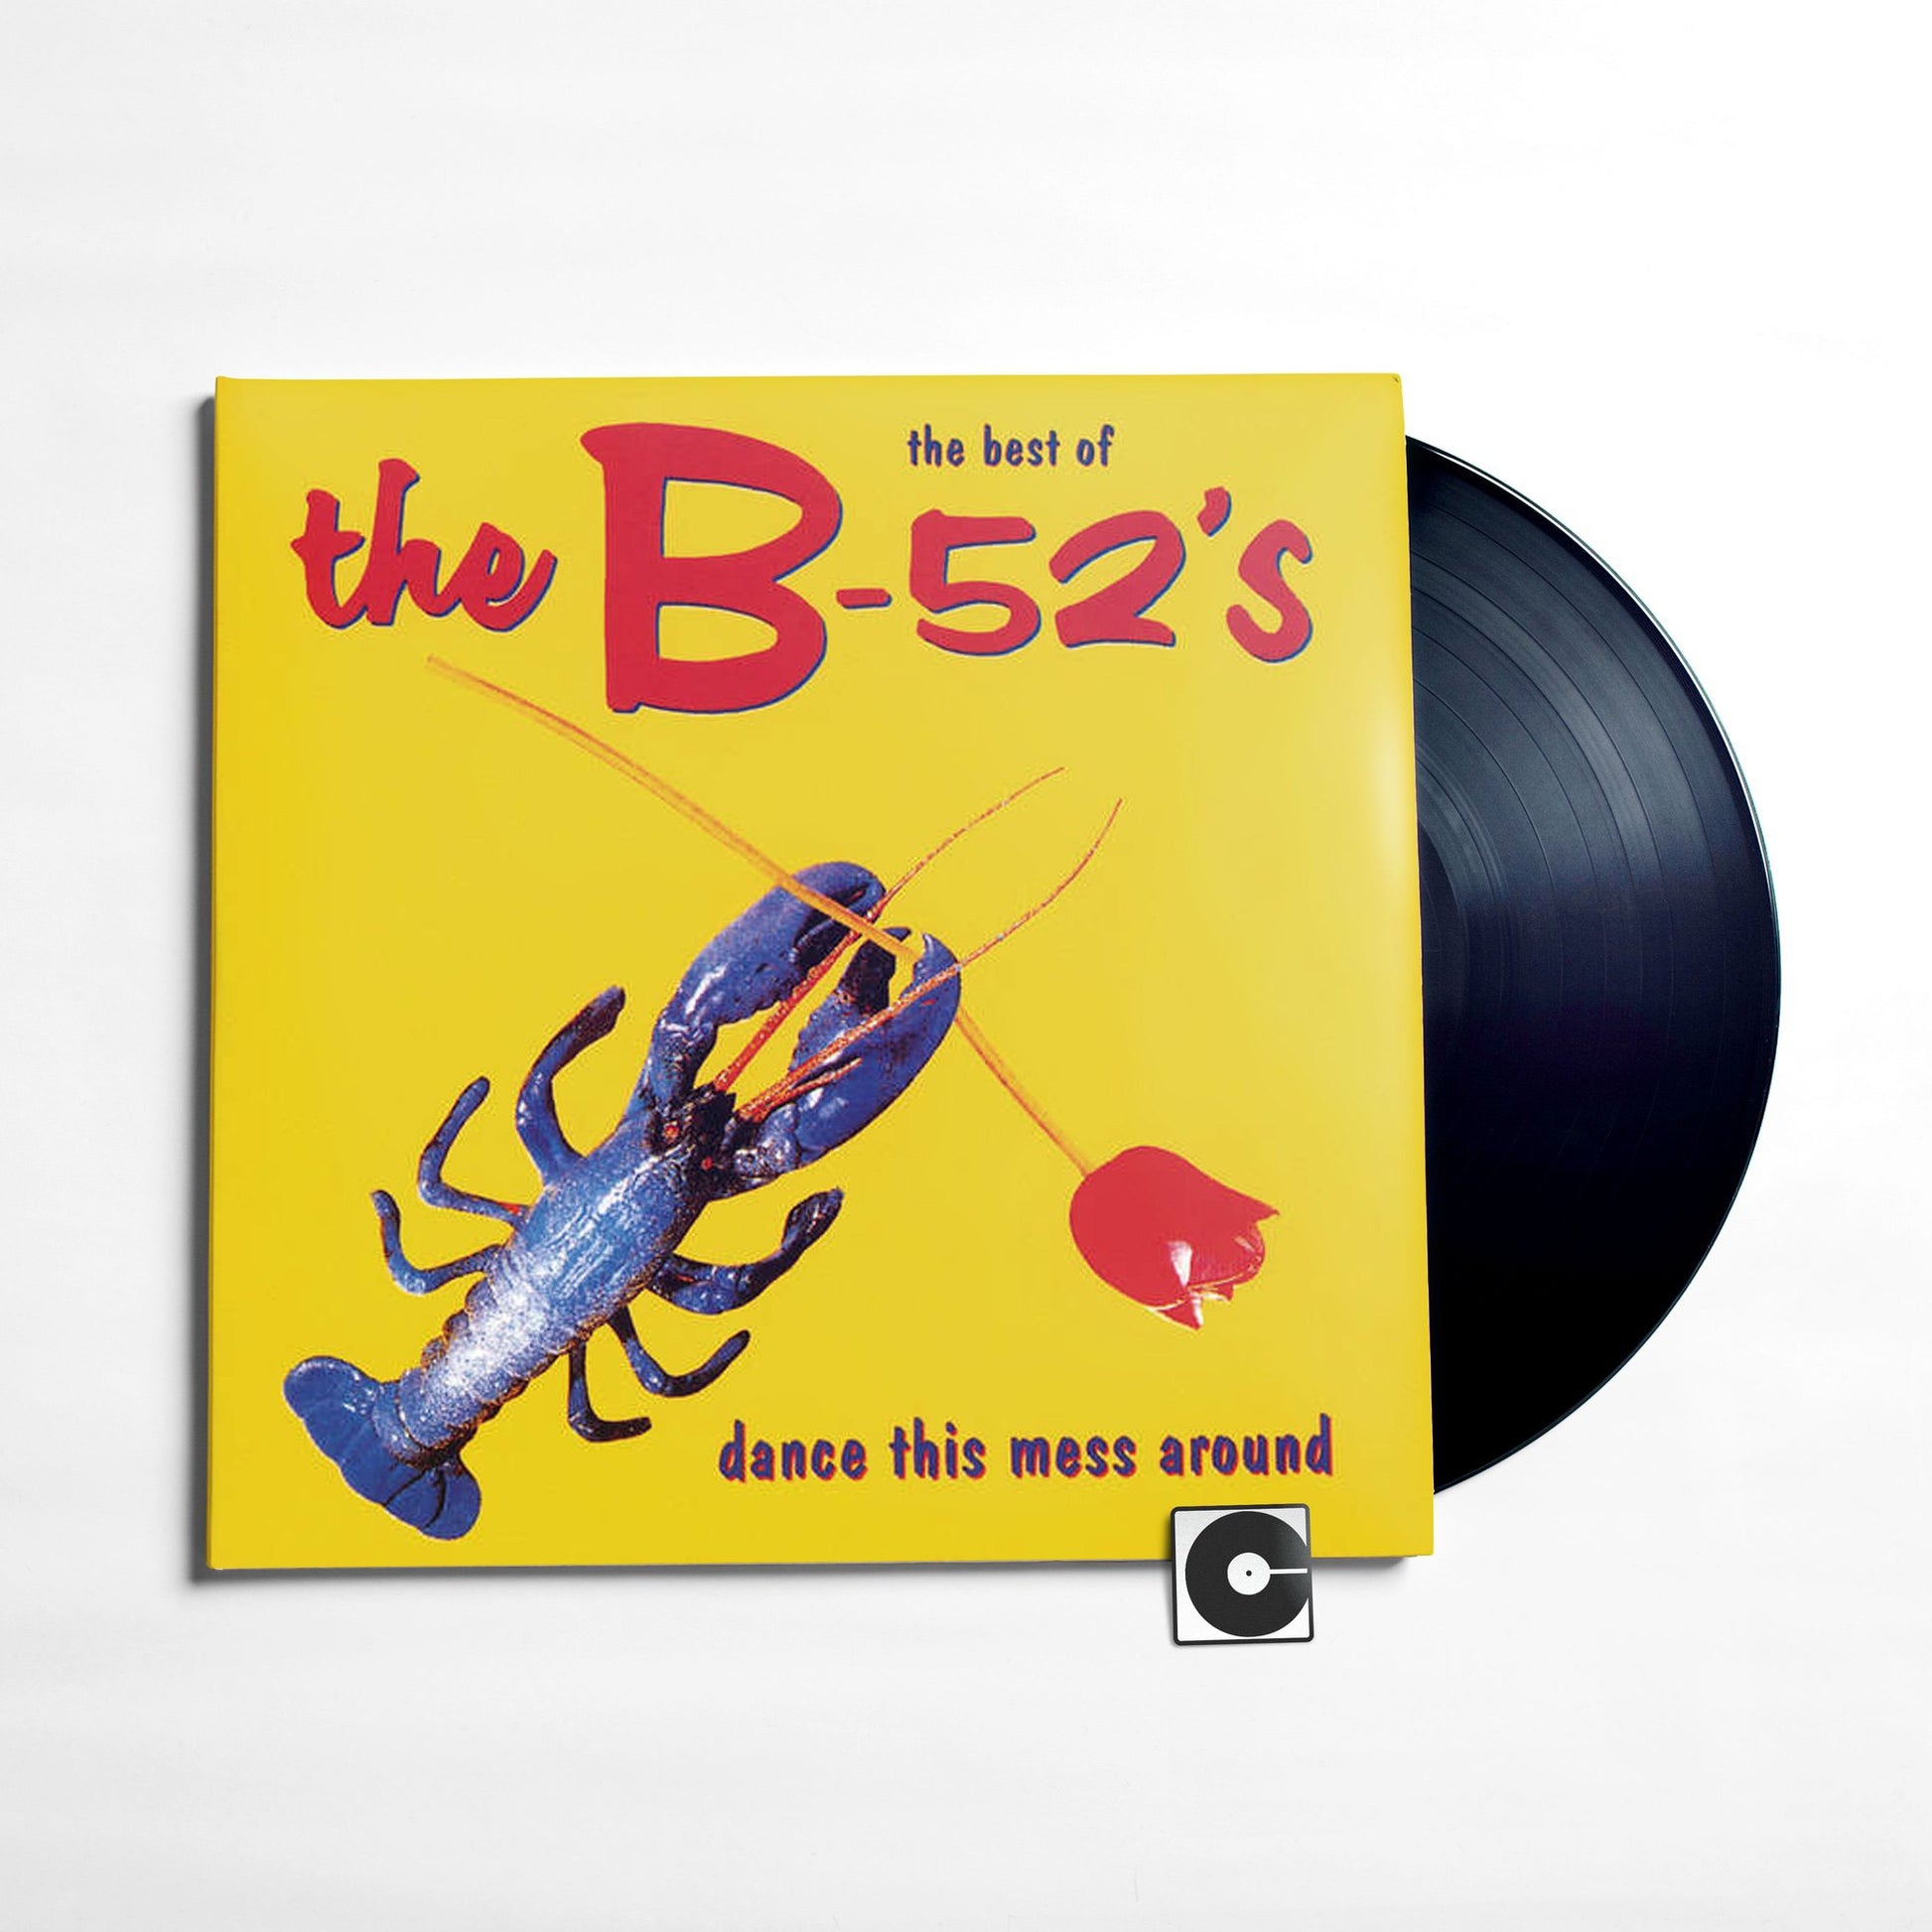 The B-52's - "Dance Mess Around" – Comeback Vinyl